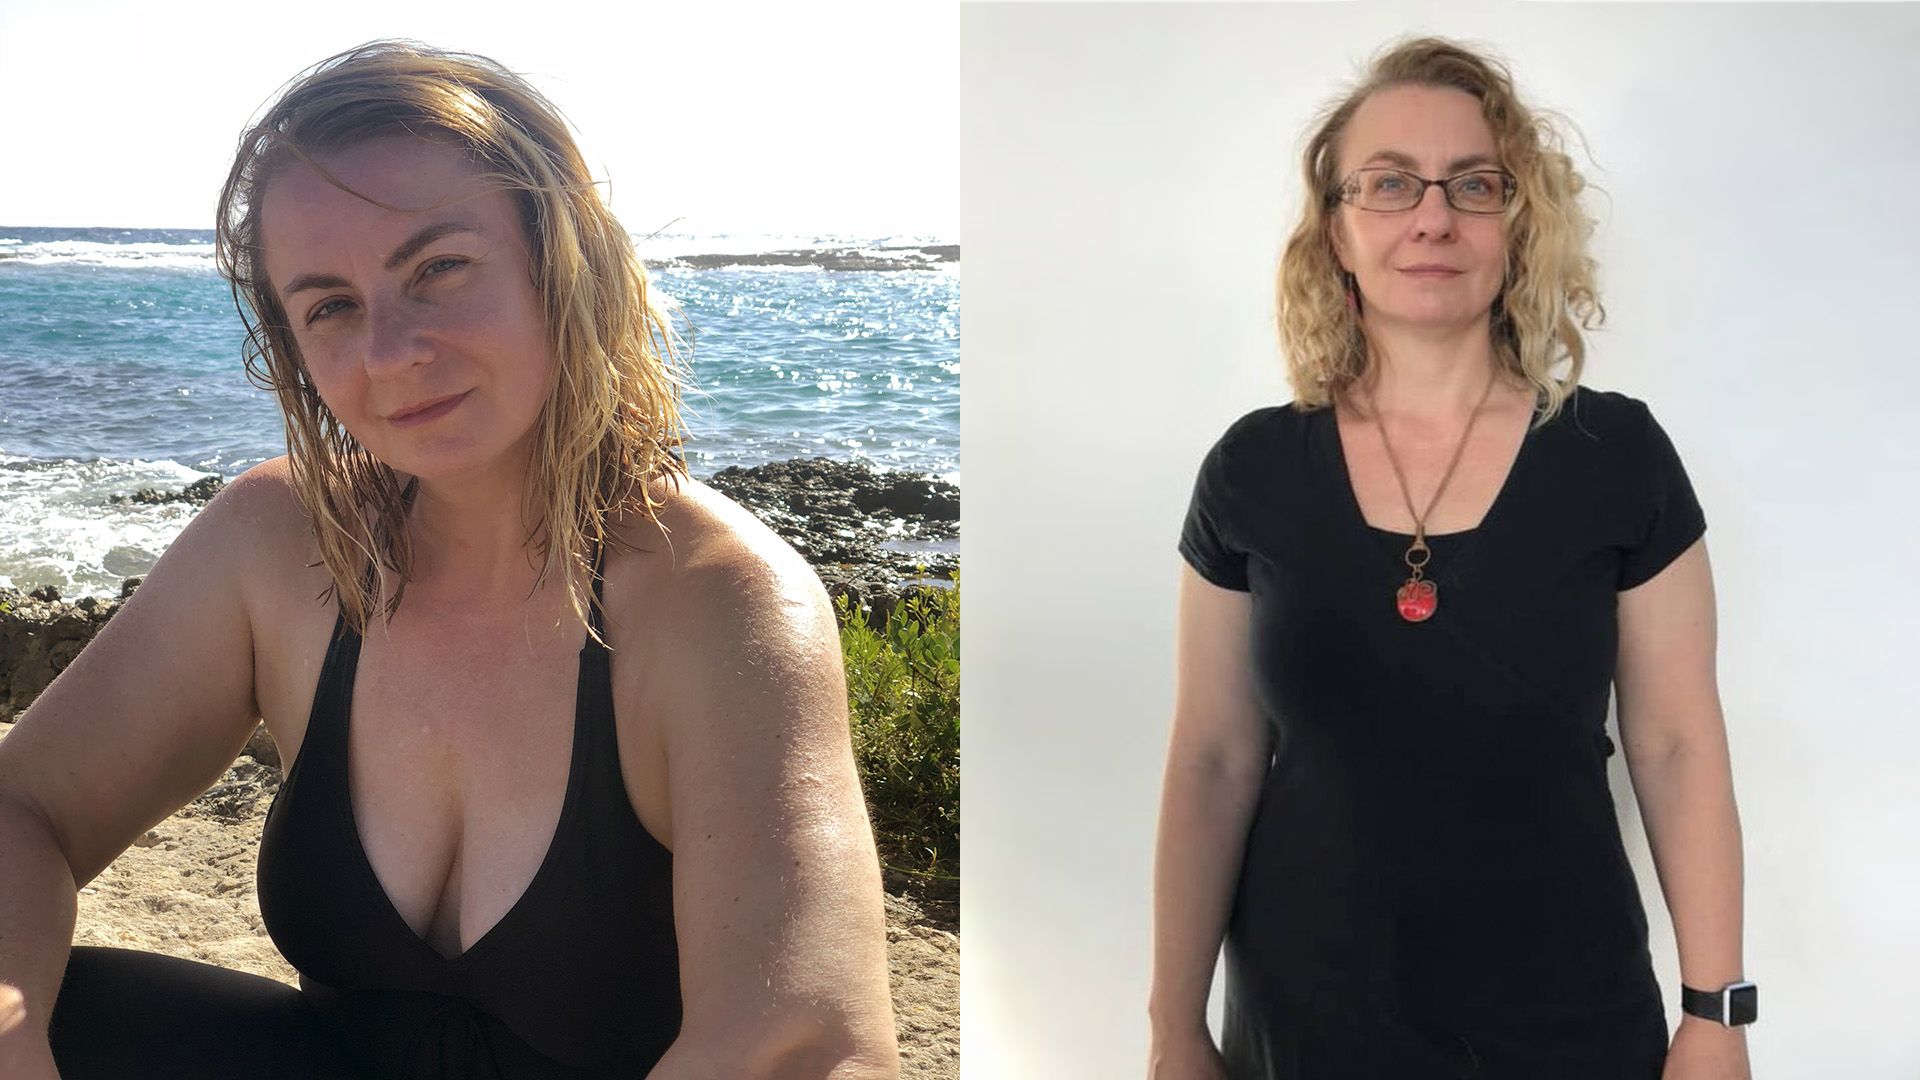 kilót fogyott műtét nélkül a 30 éves nő: képeken az átváltozása - Fogyókúra | Femina